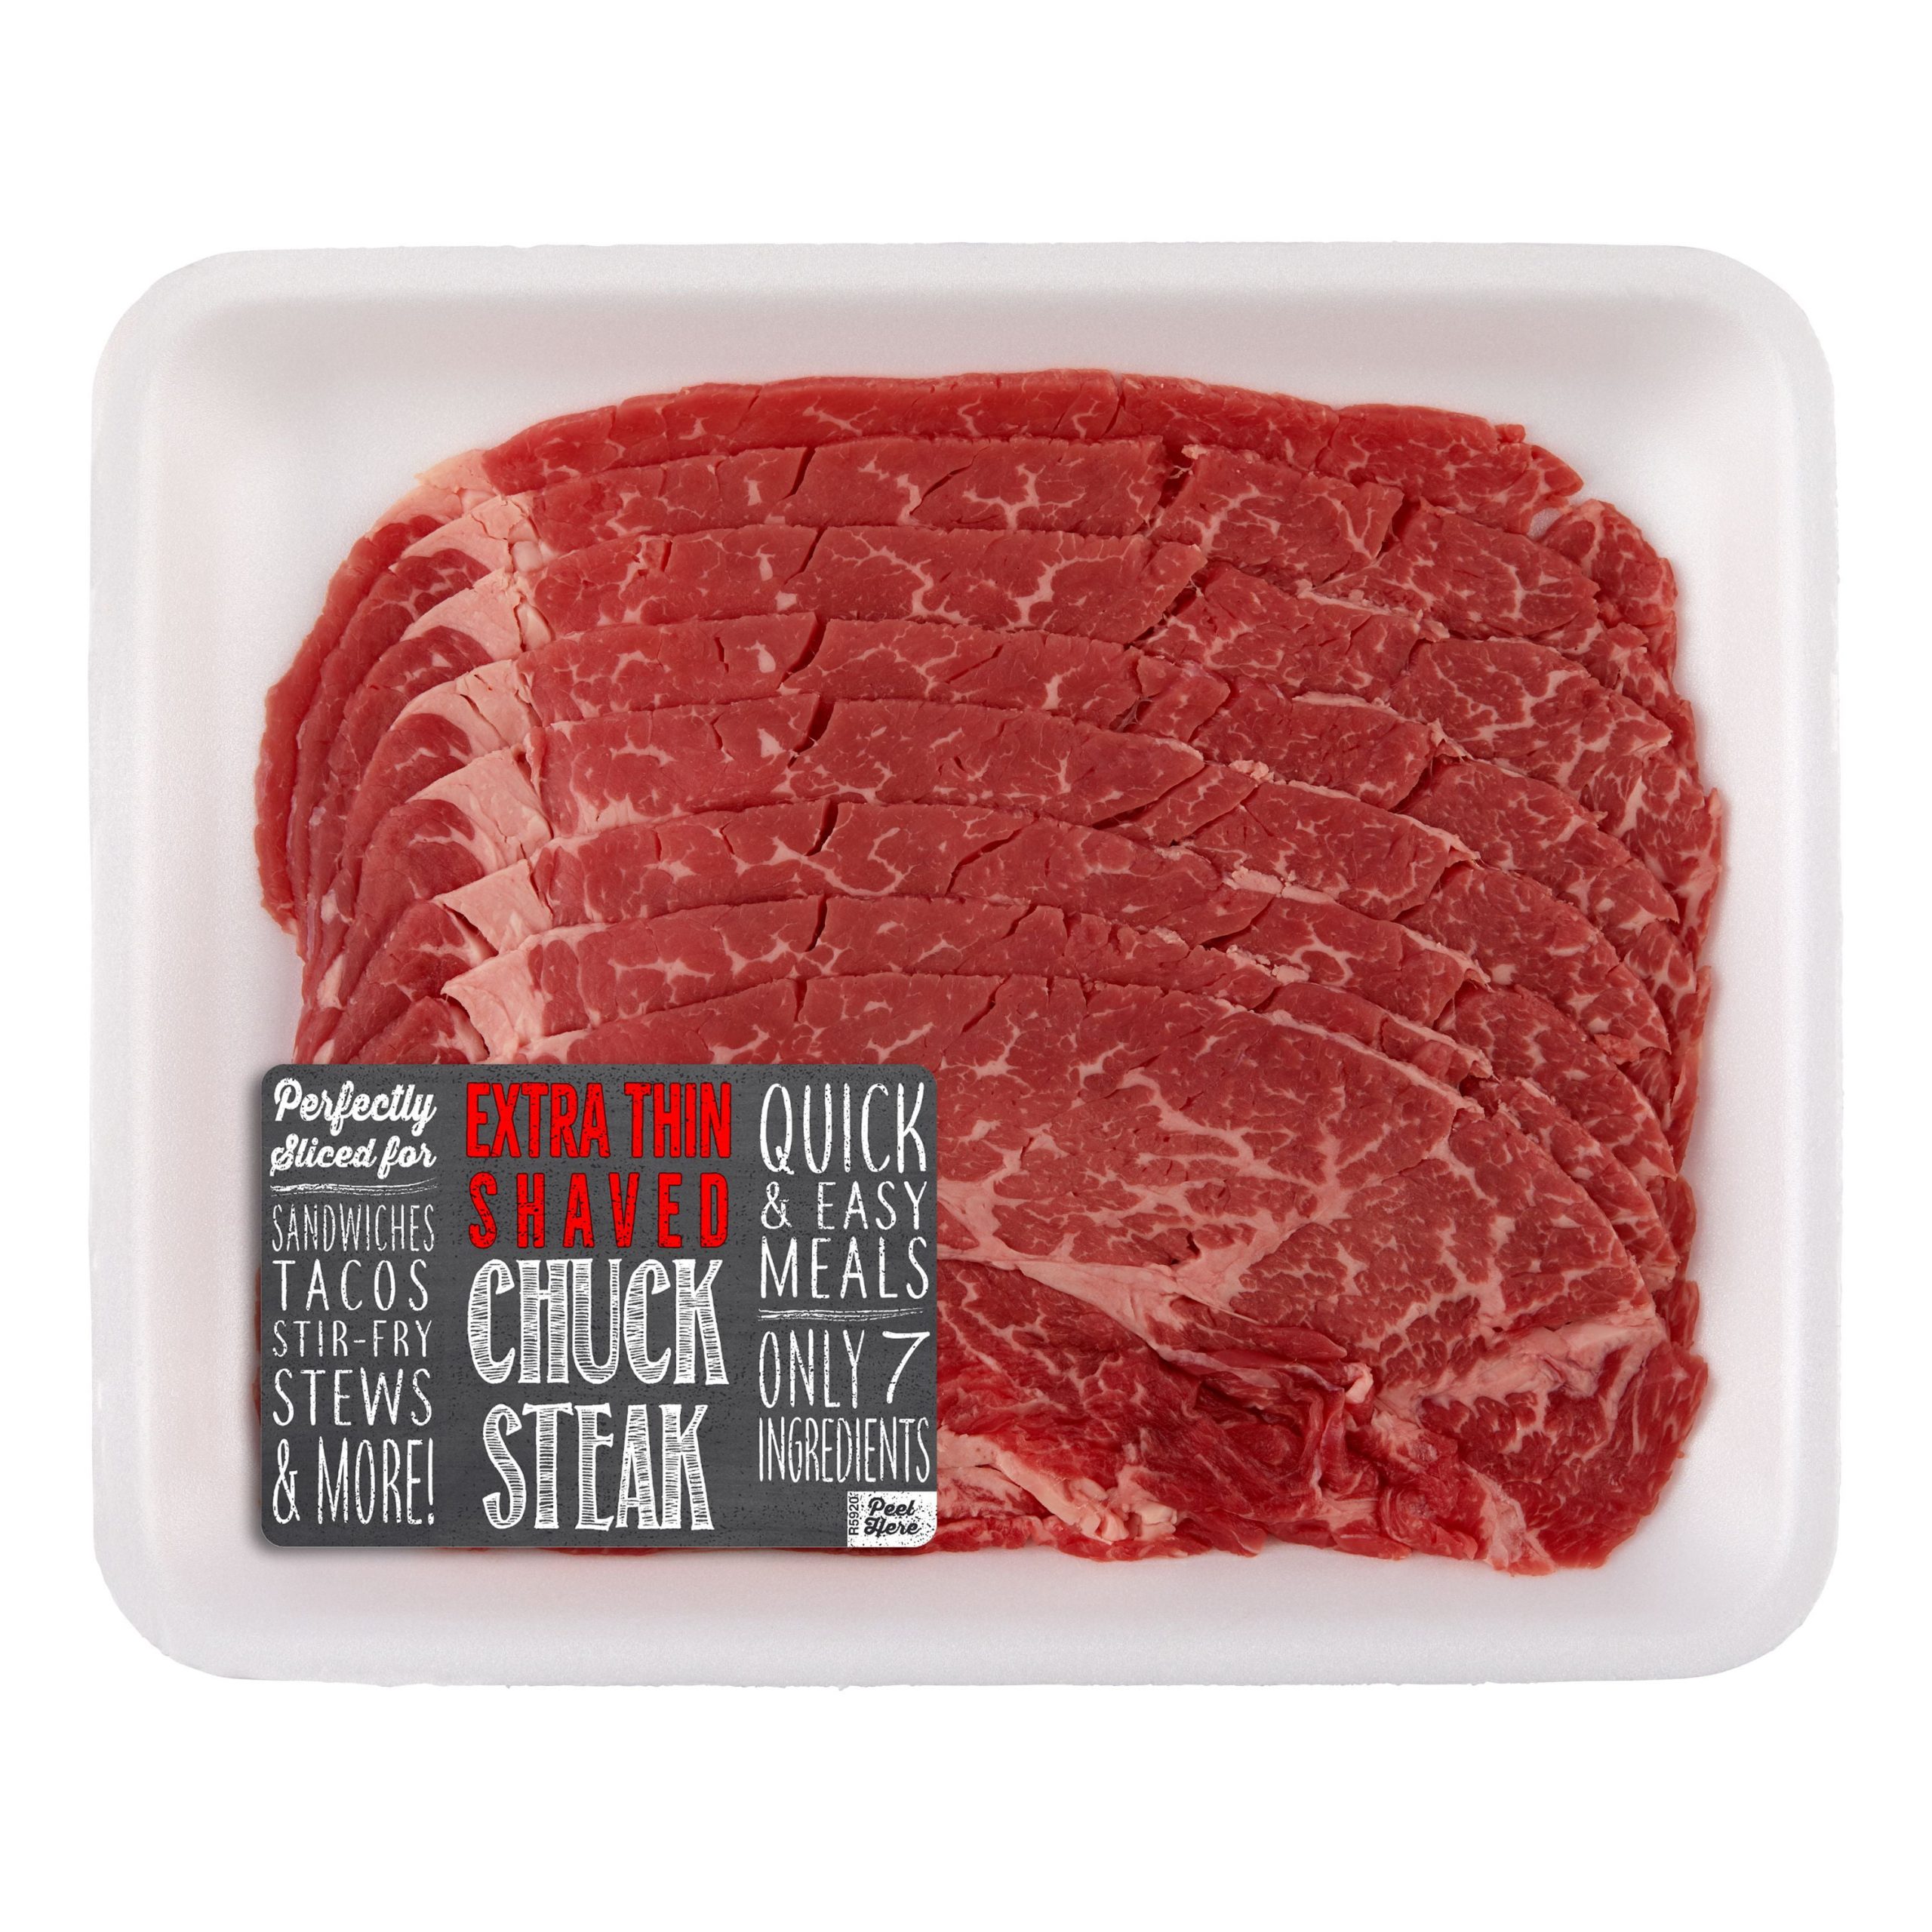 Beef Chuck Shaved Steak, 0.79